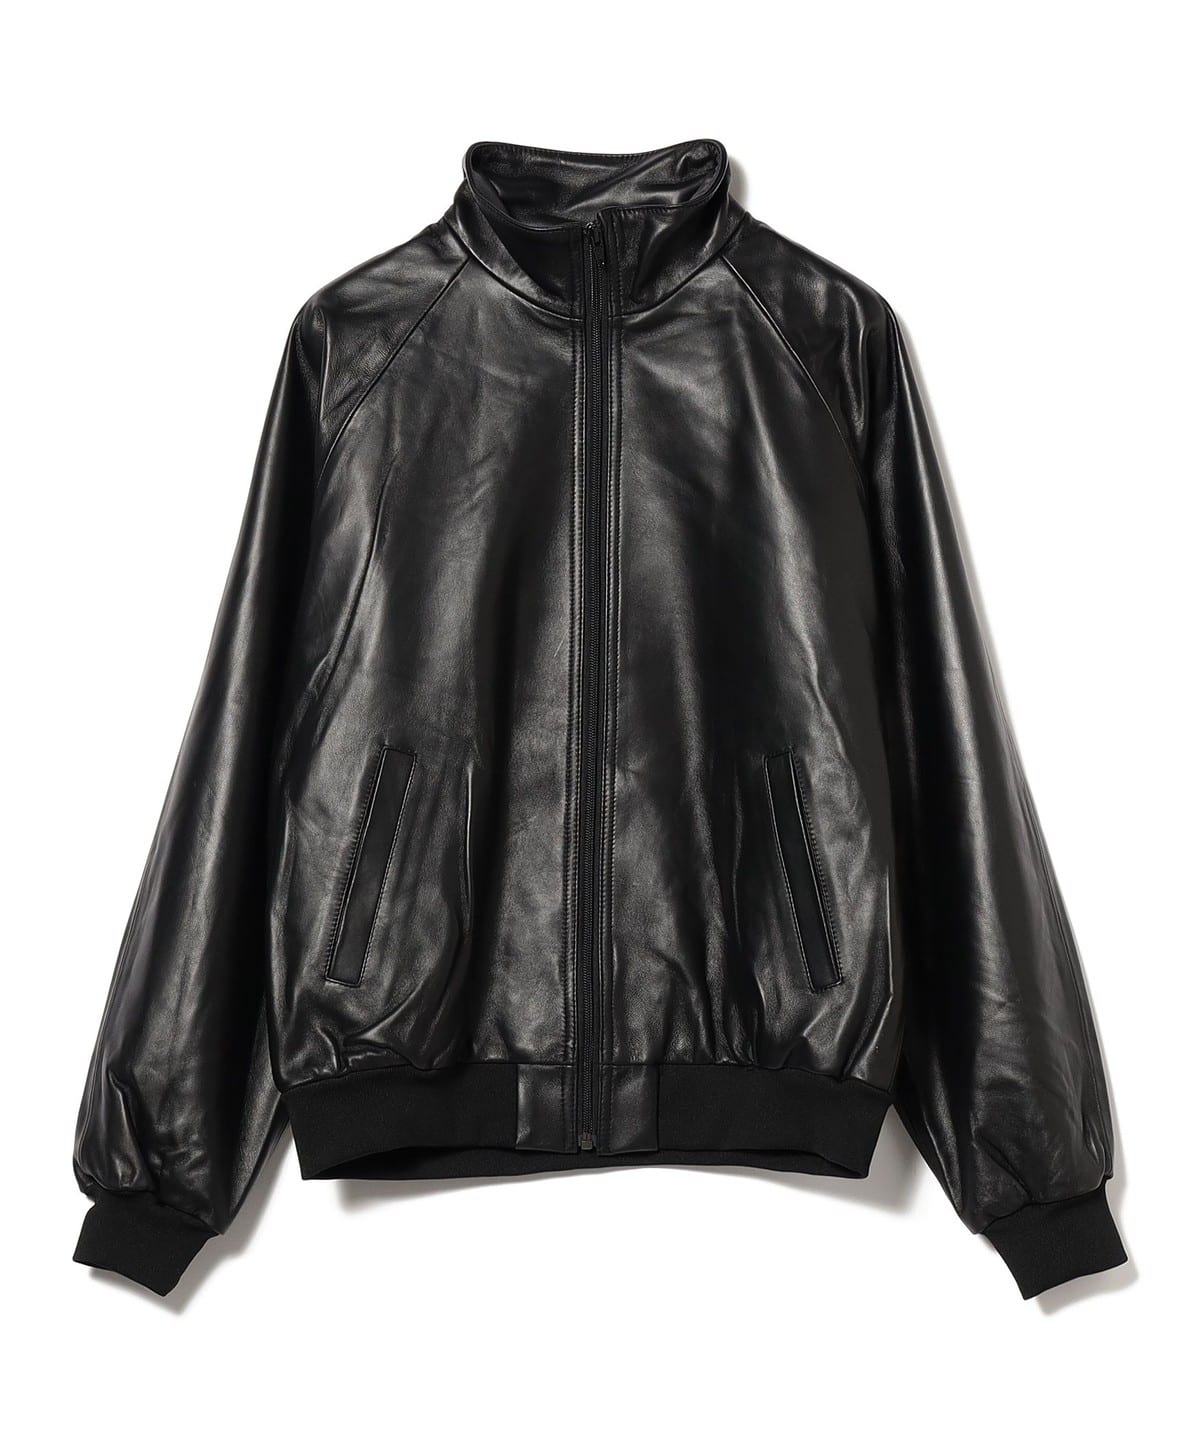 VAPORIZE（ヴェイパライズ）VAPORIZE / Leather Track Jacket